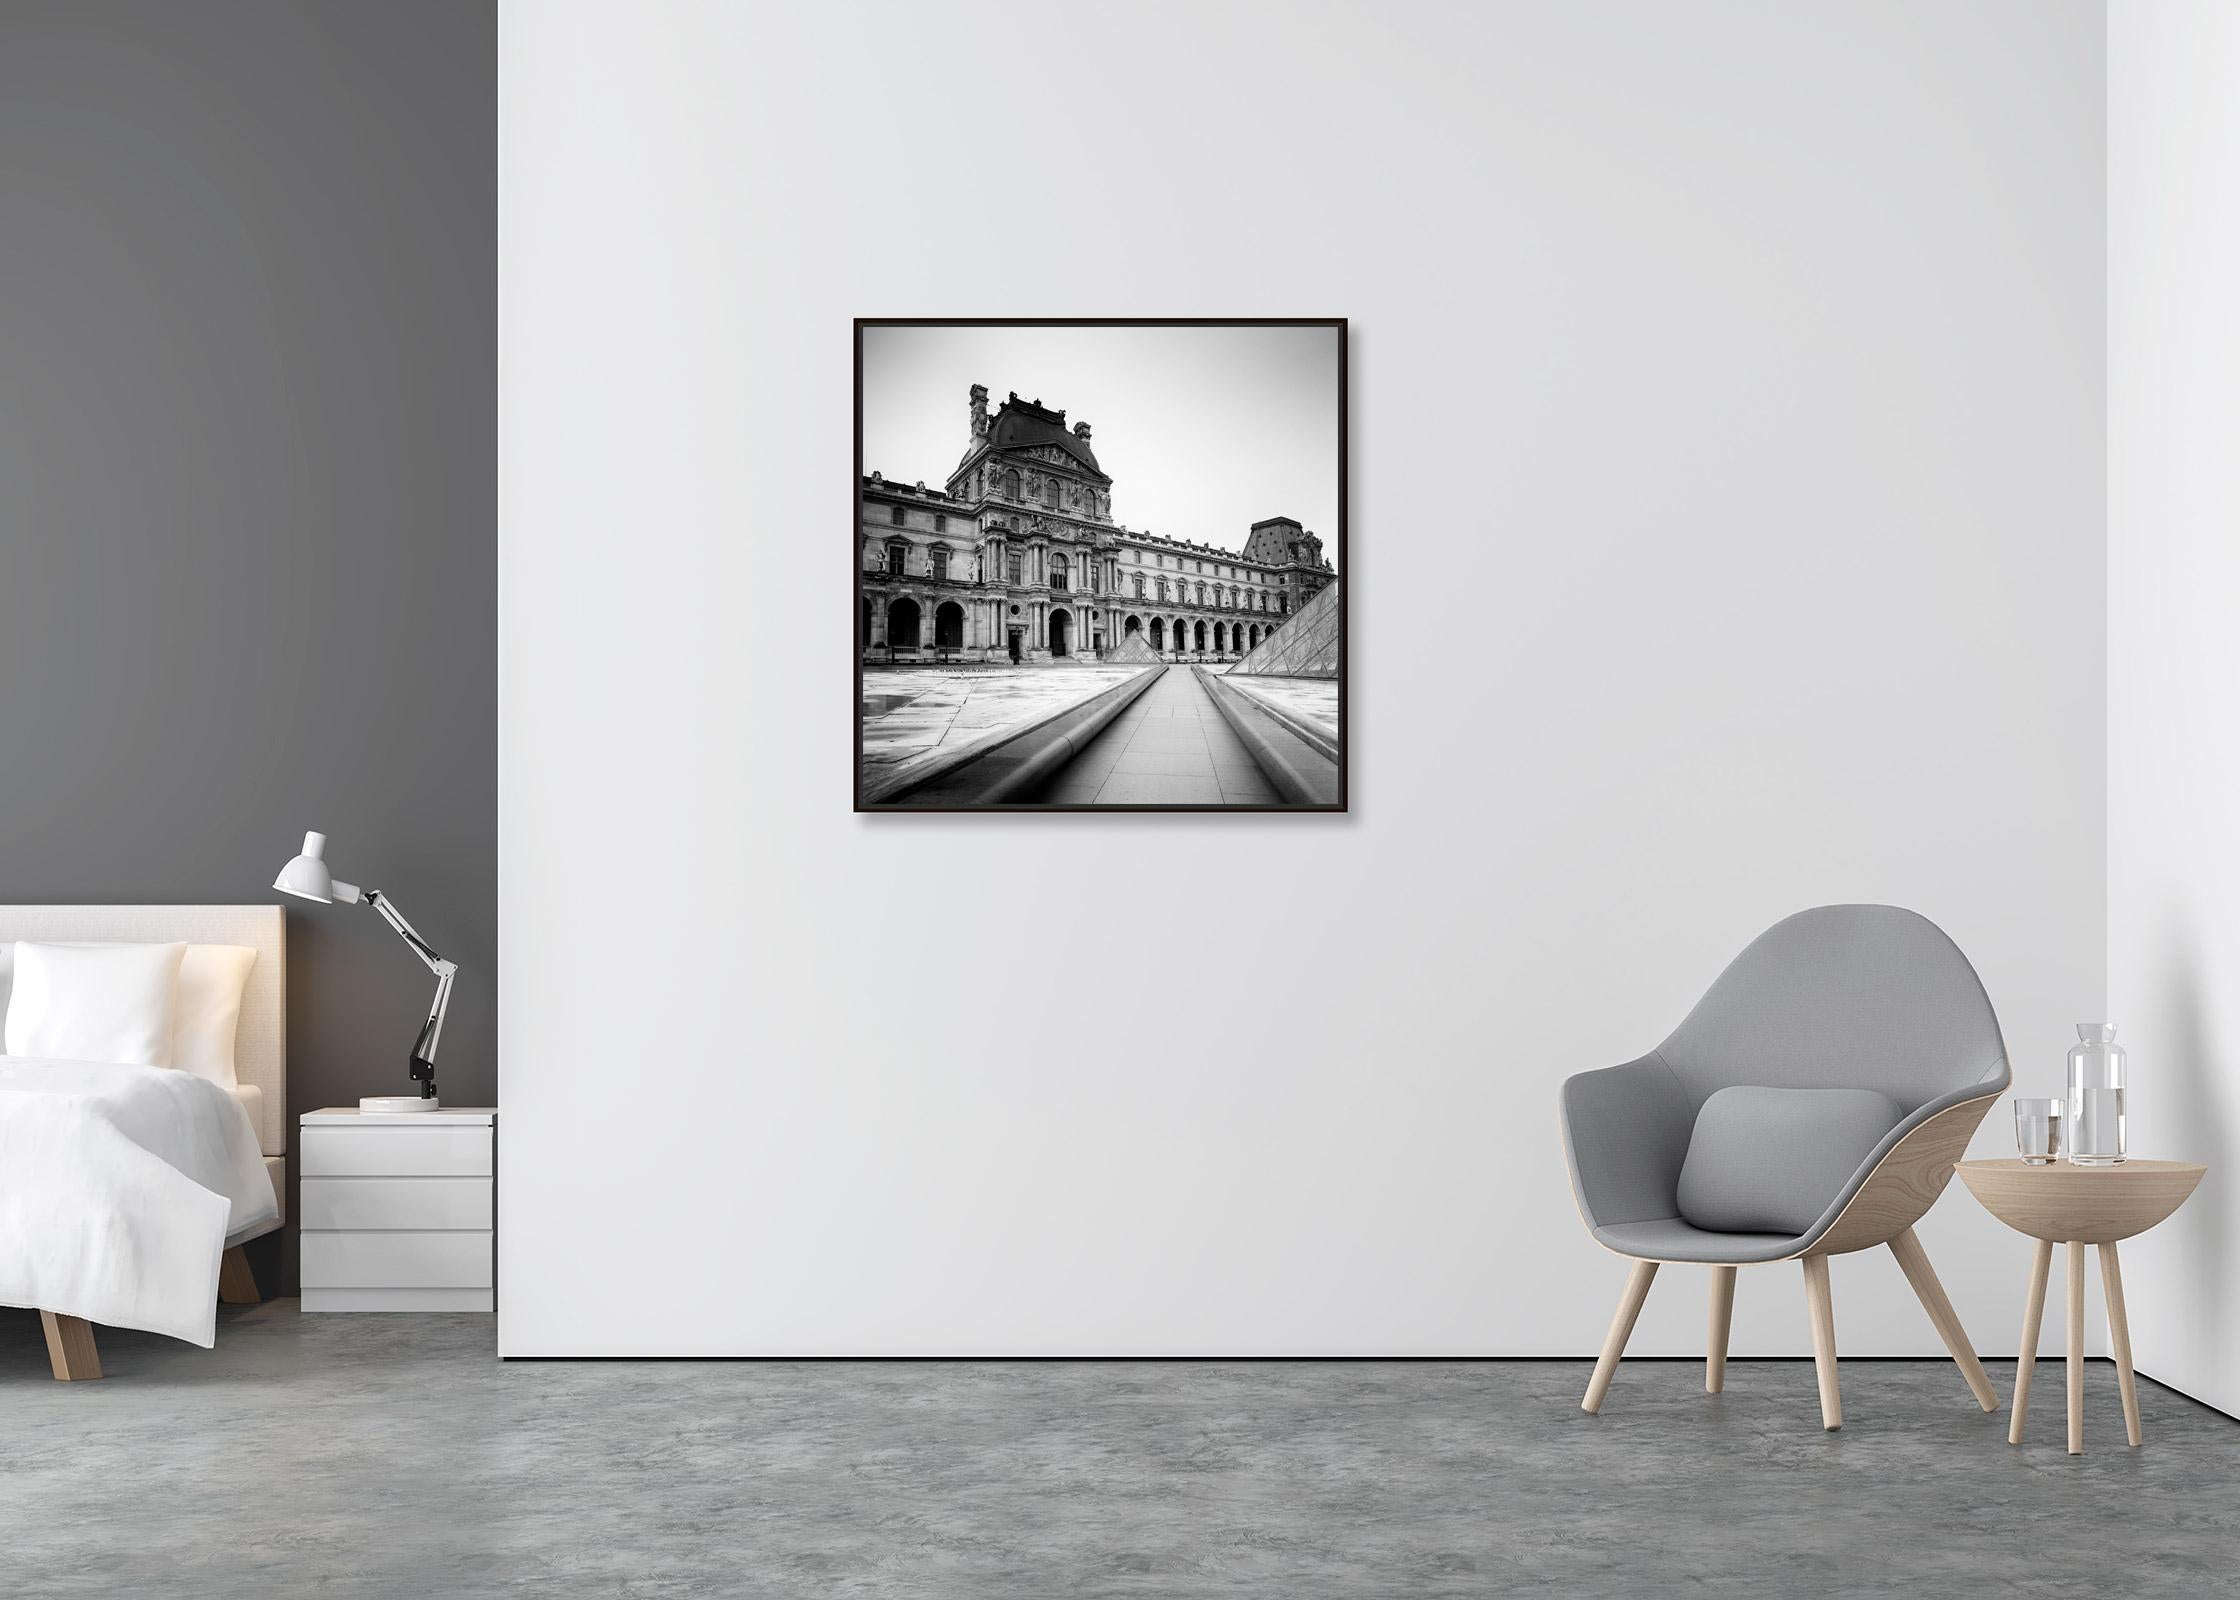 Pavillon Denon, Louvre, Paris, France, photographies de paysages urbains en noir et blanc - Contemporain Photograph par Gerald Berghammer